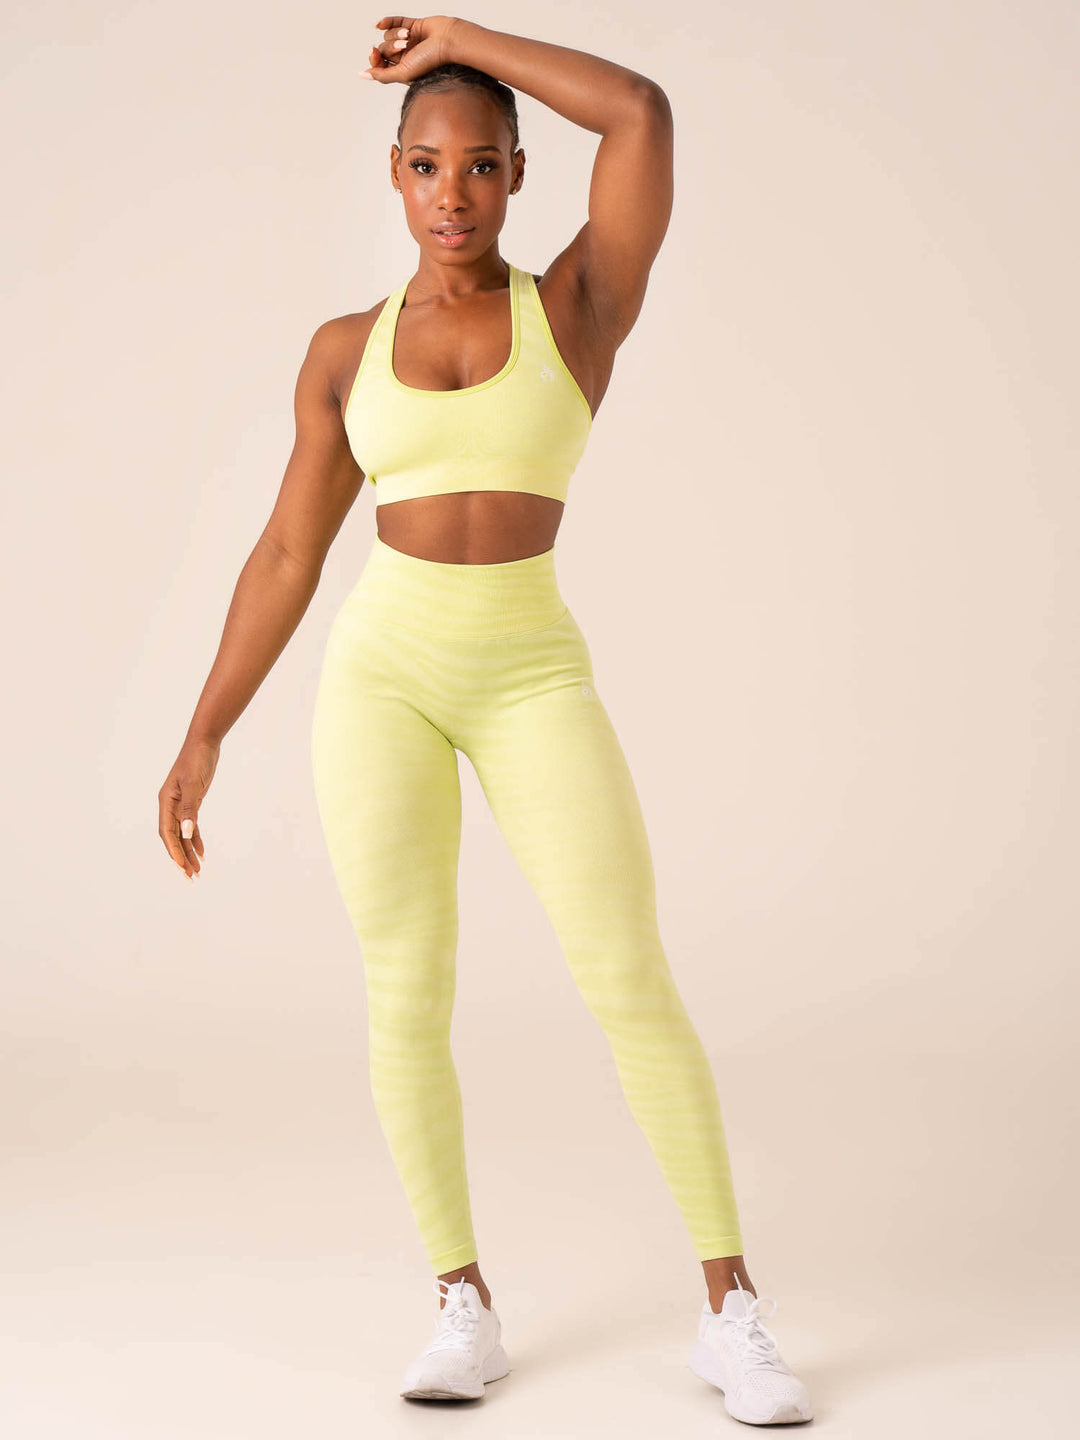 Ryderwear - Women's Fitness Leggings